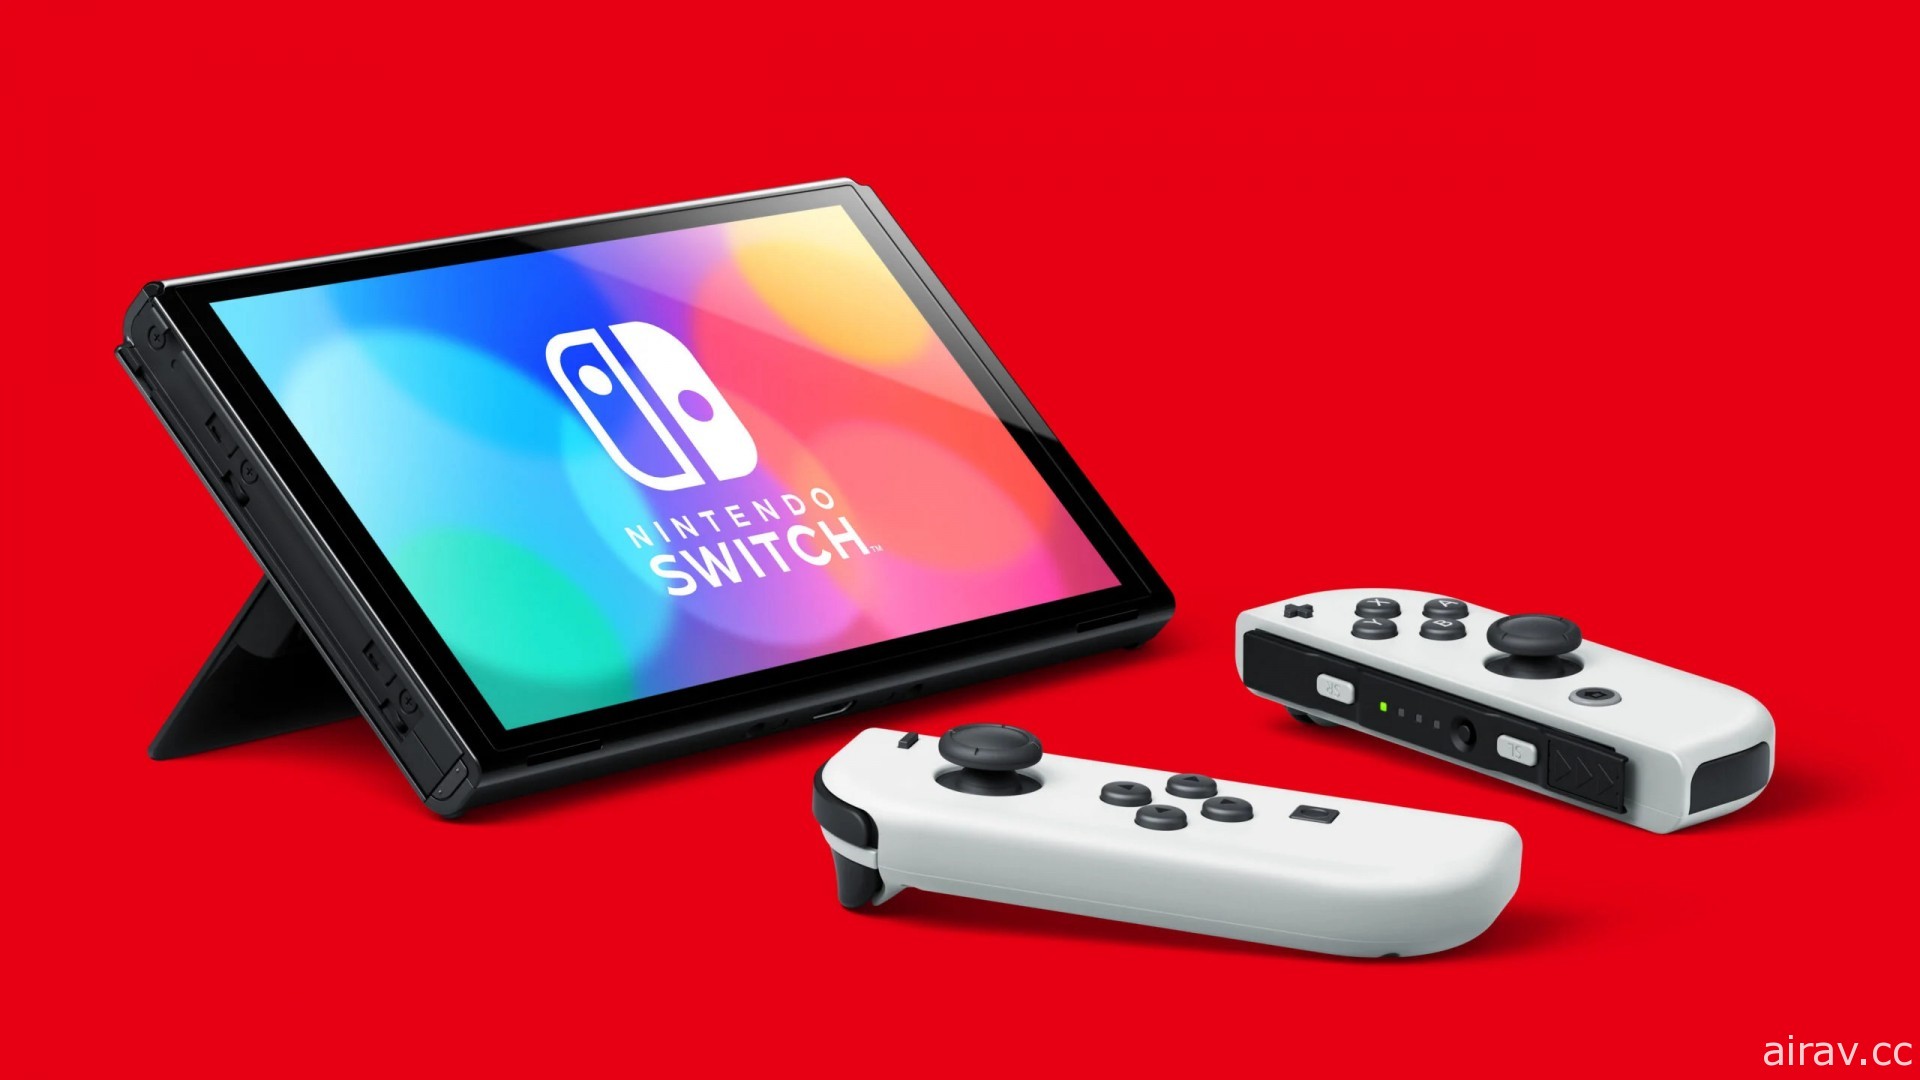 任天堂确认新型 Nintendo Switch 主机采用相同处理芯片 效能并无提升